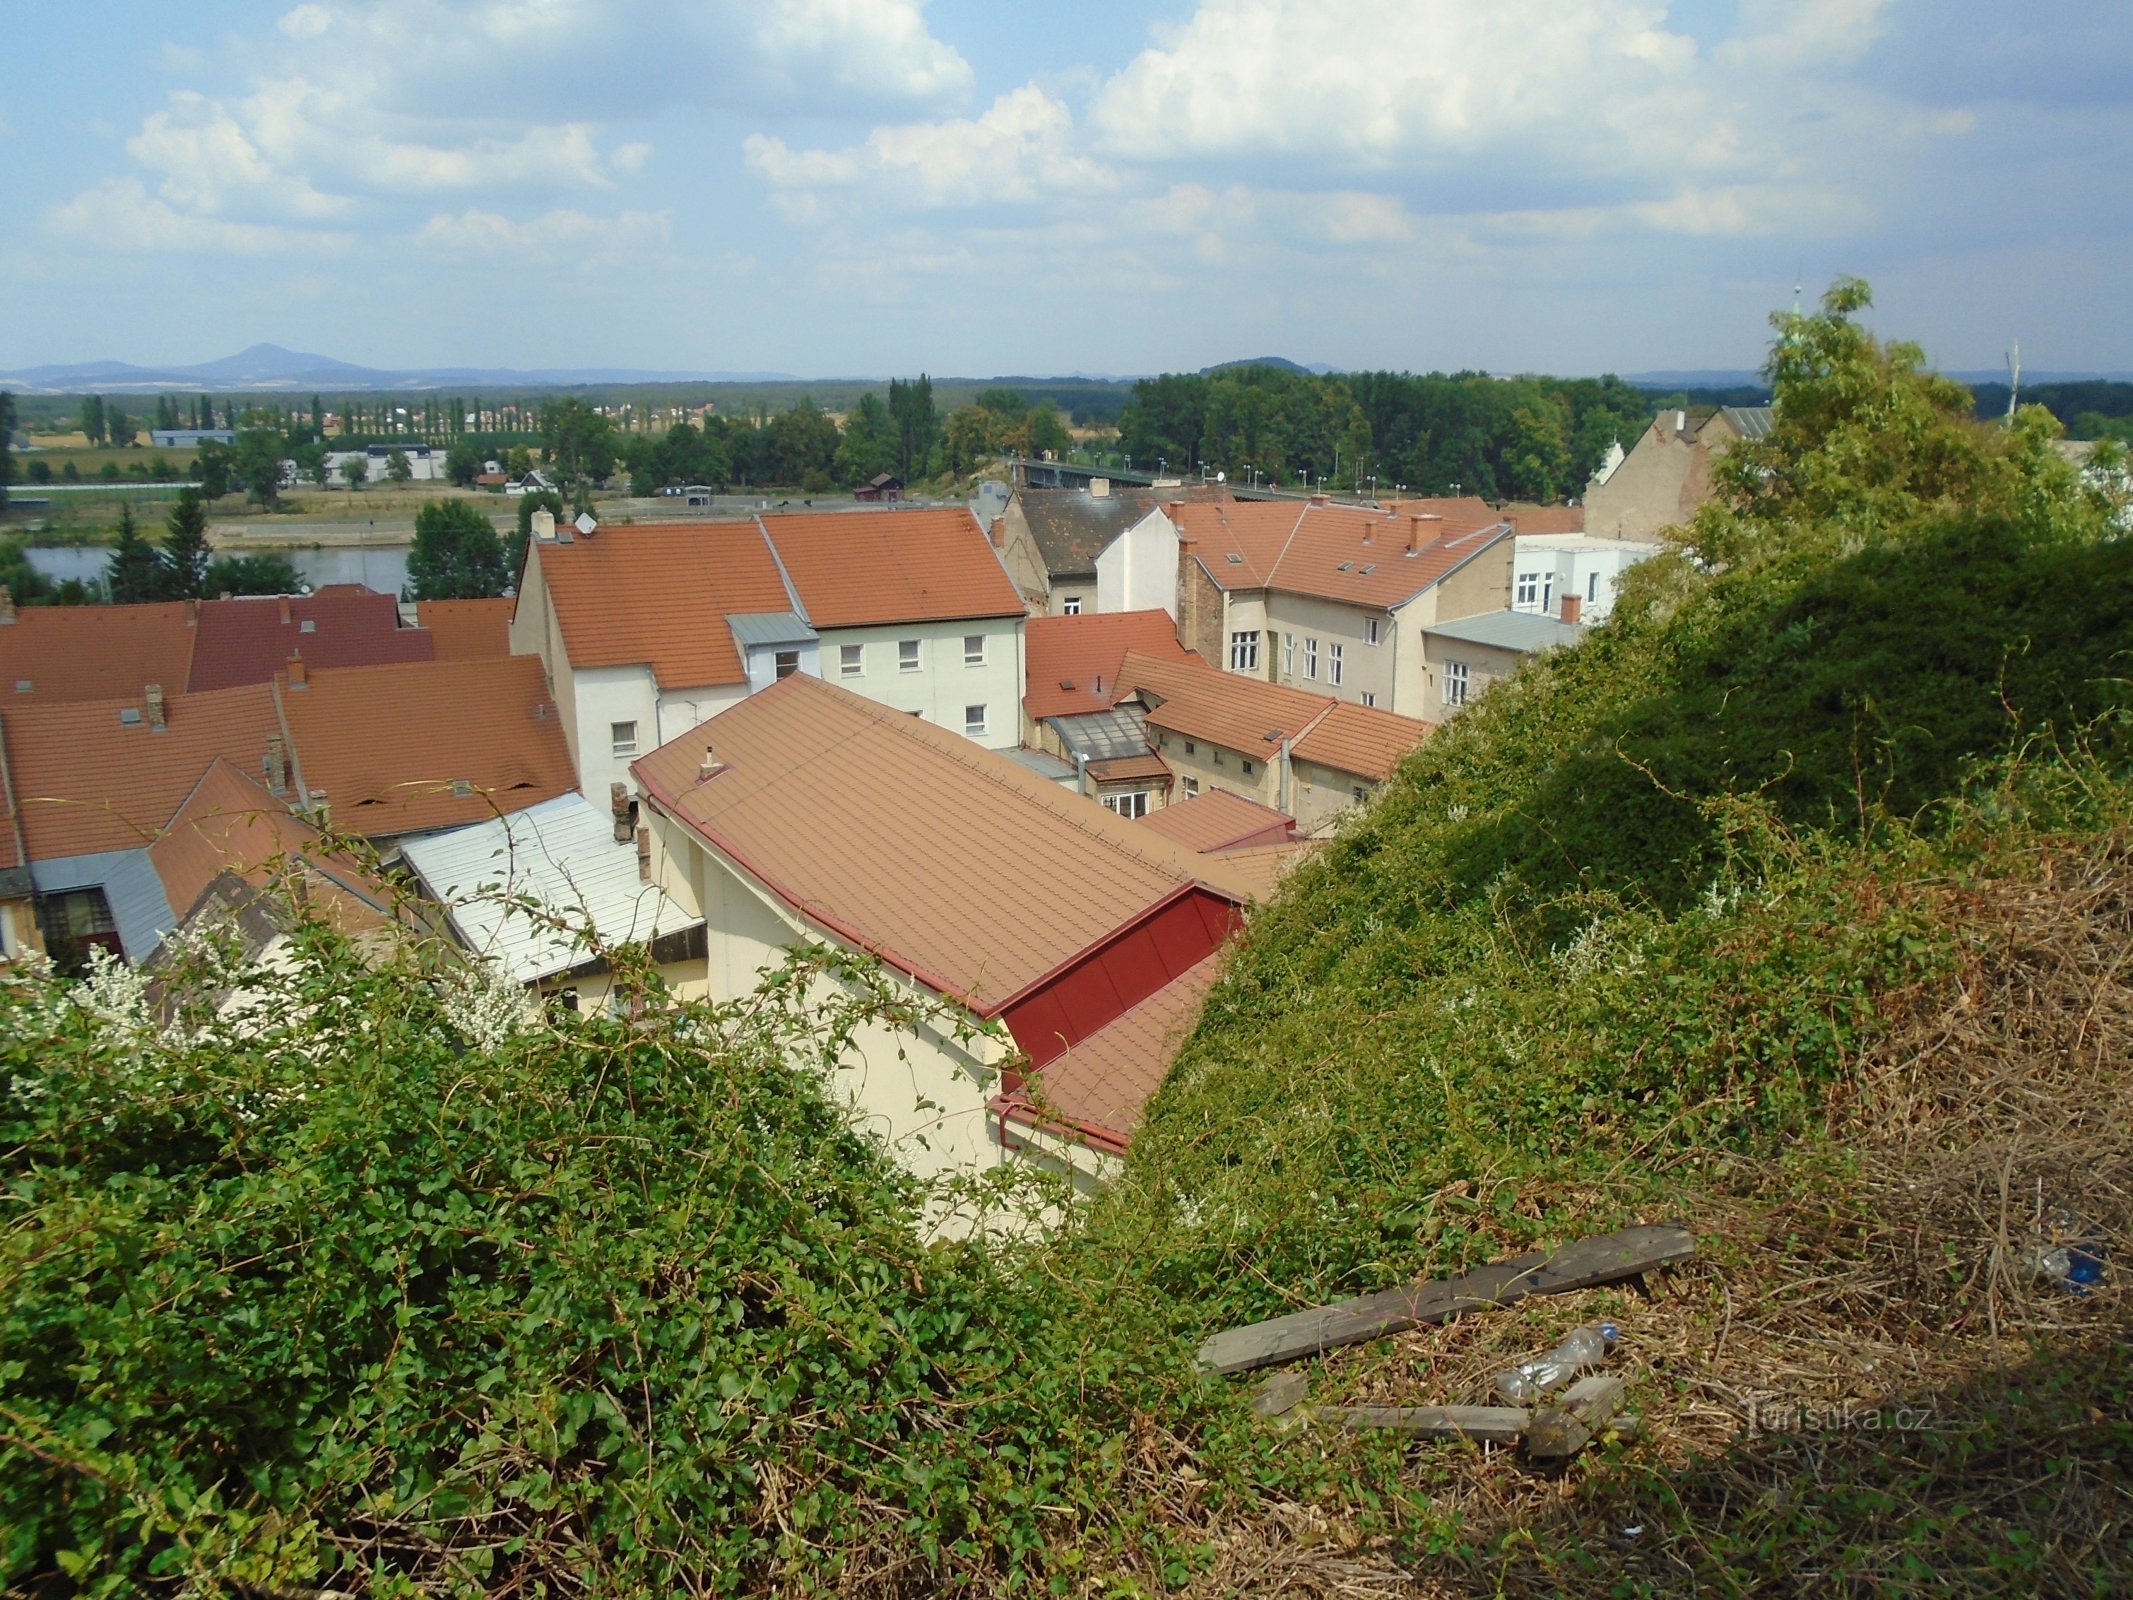 Pogled s Hláske (Roudnice nad Labem)